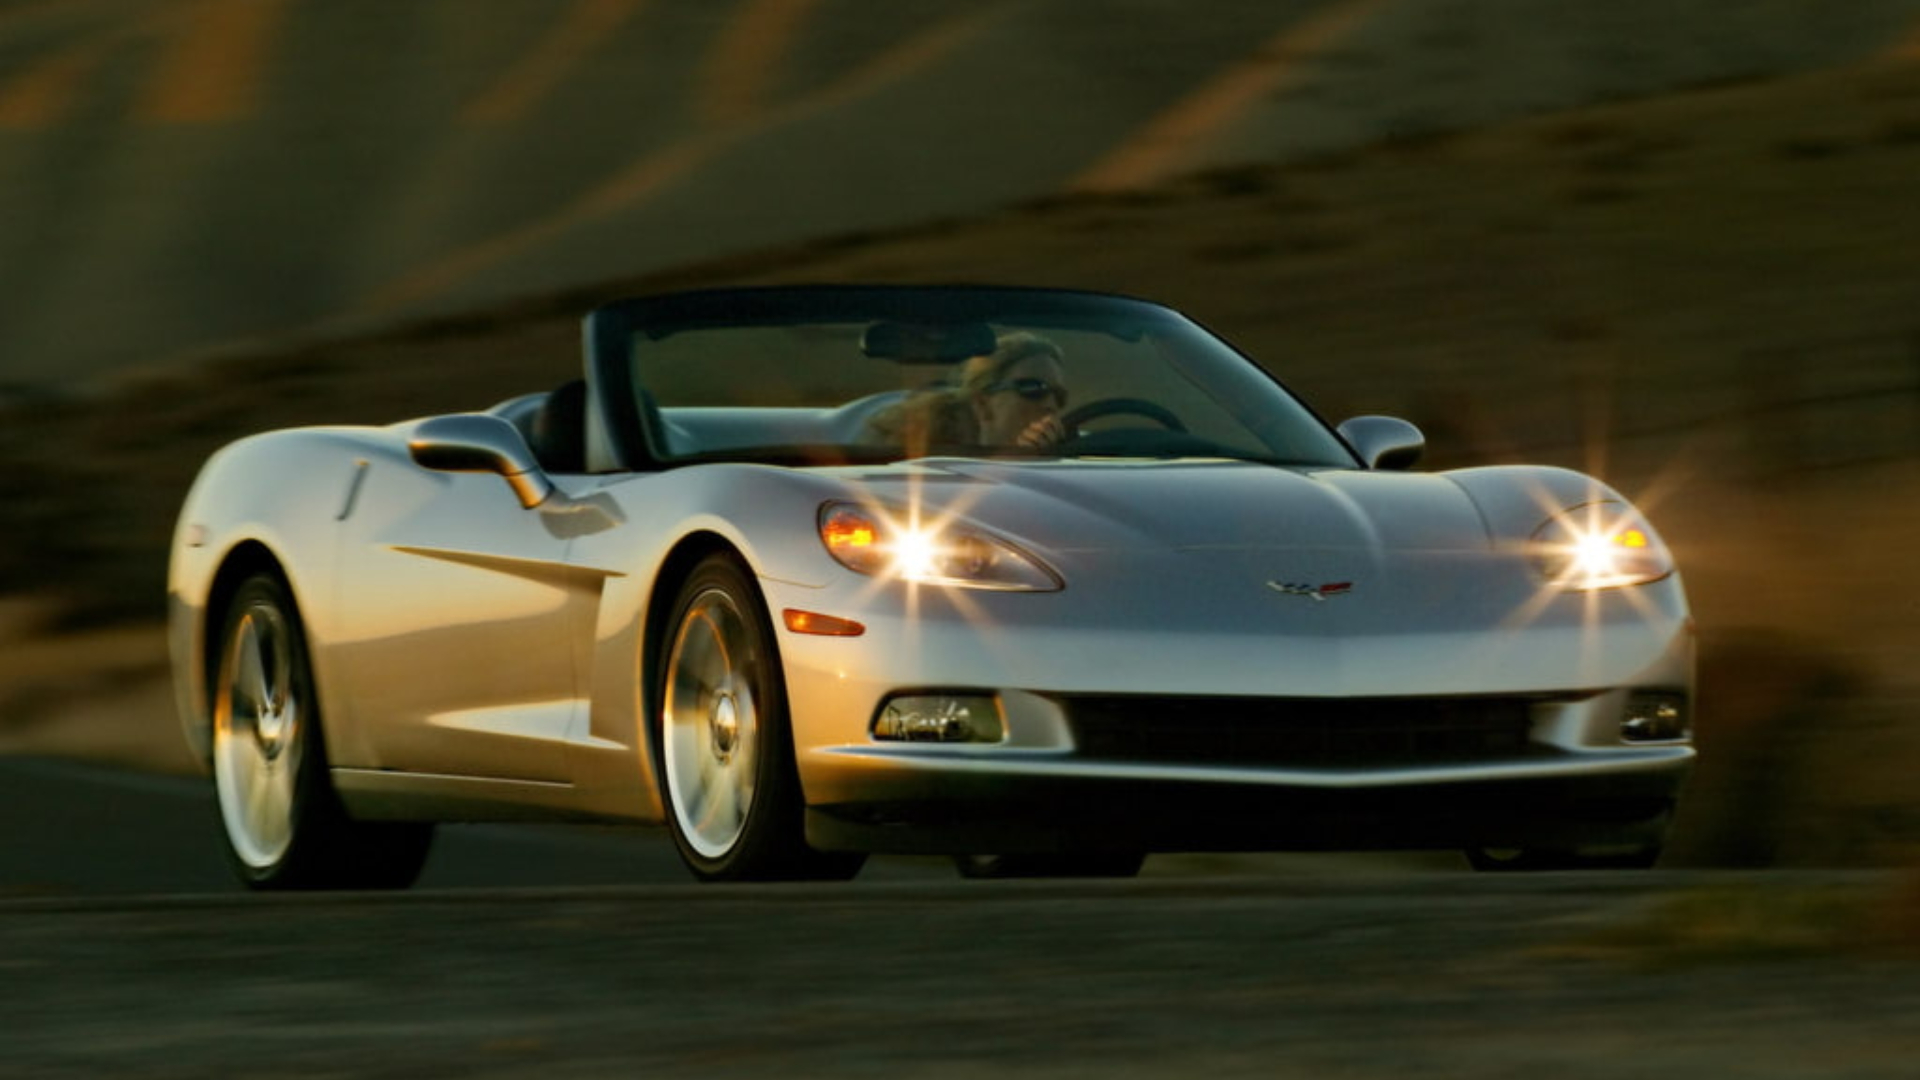 2005 Corvette Wallpapers